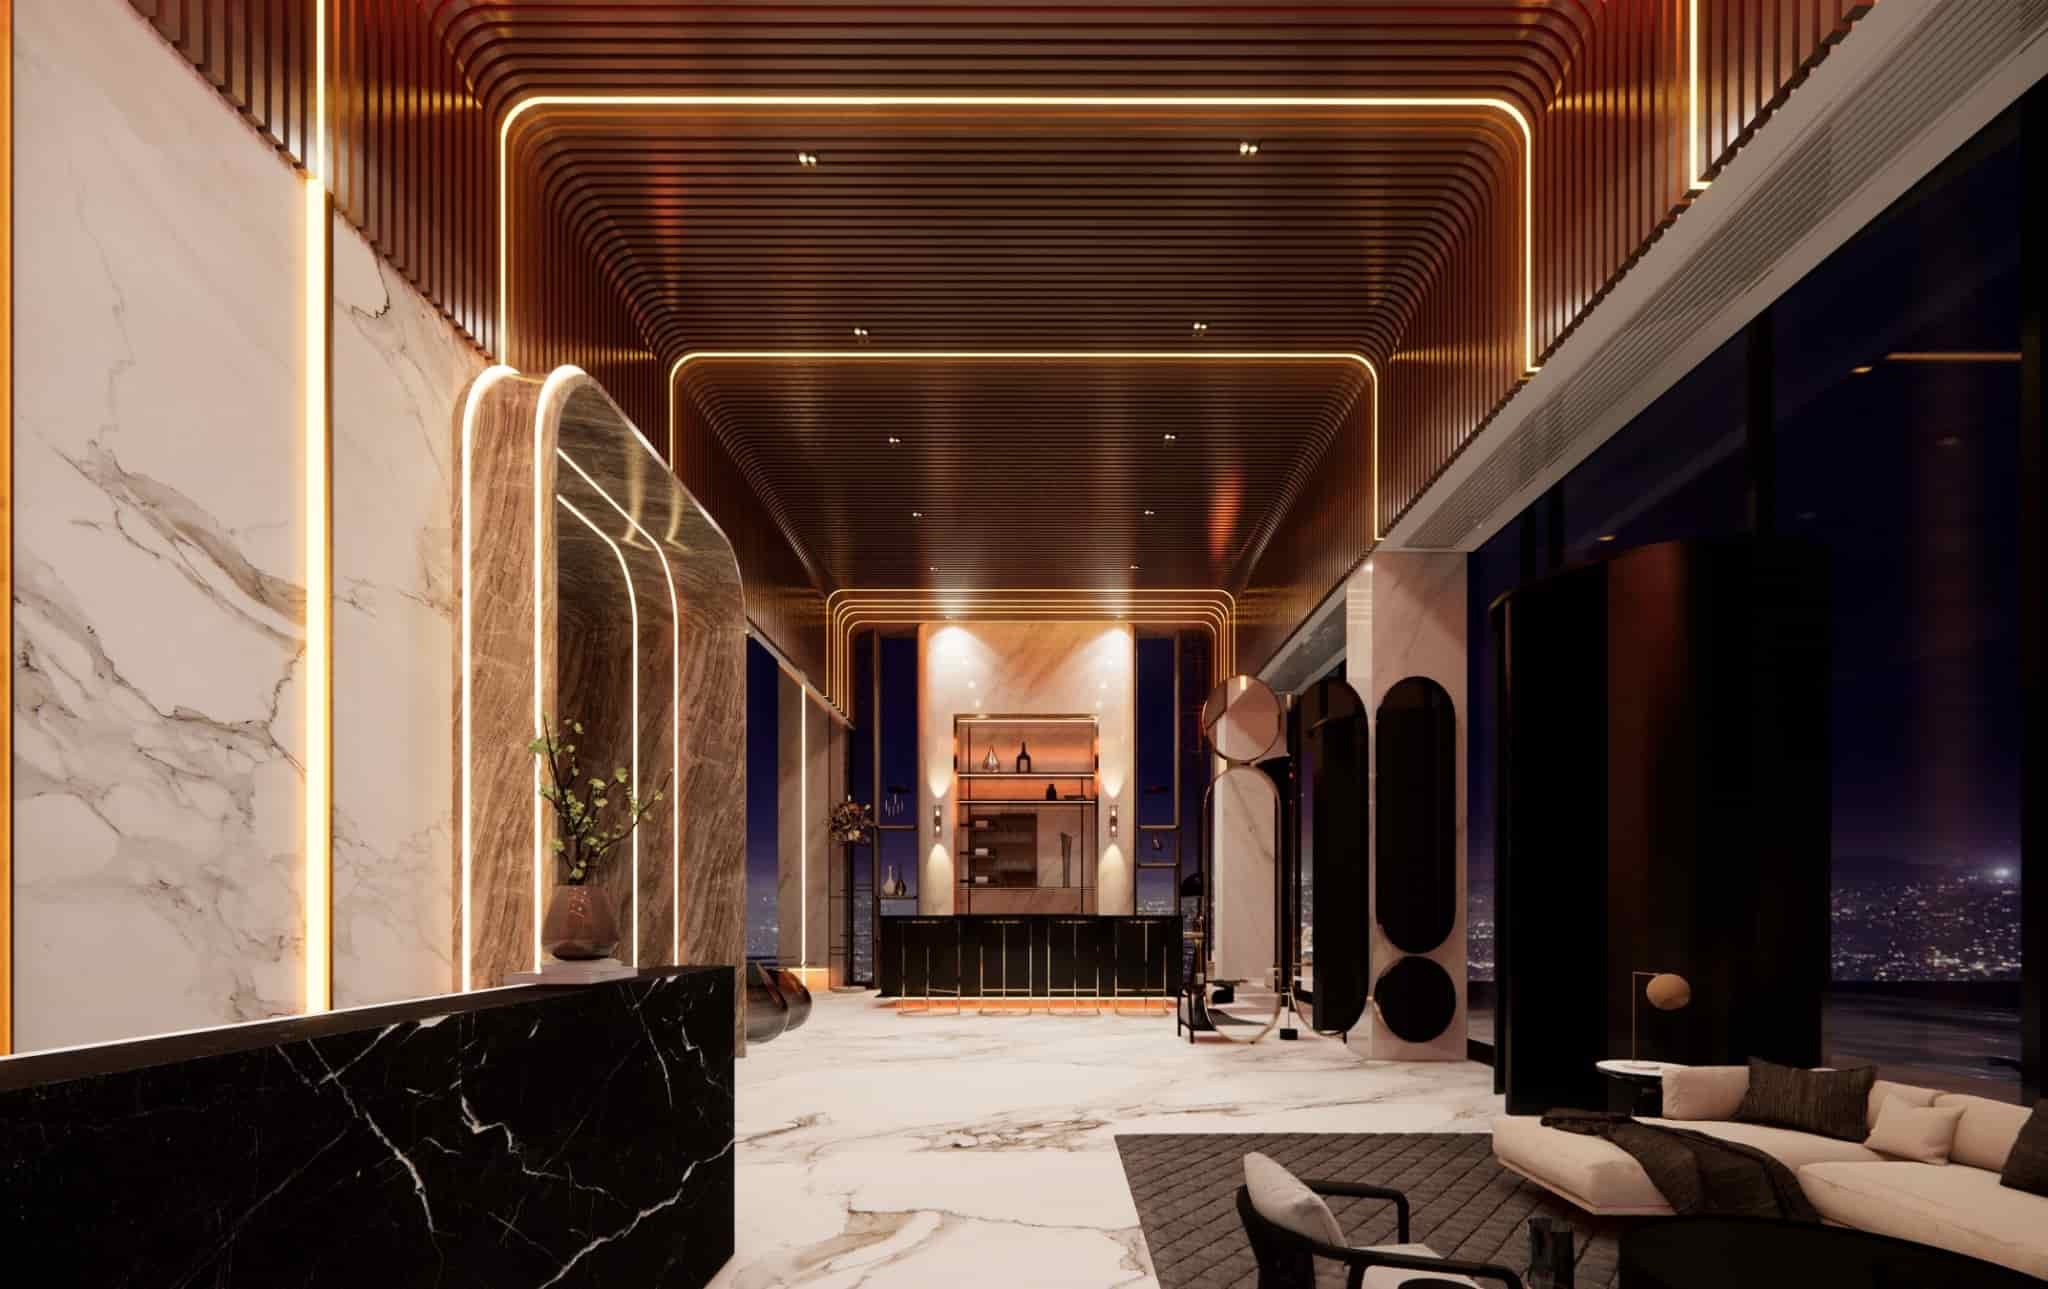 รับออกแบบภายในโรงแรม โดยบริษัทมืออาชีพจากฝรั่งเศส Instyle Deco Paris